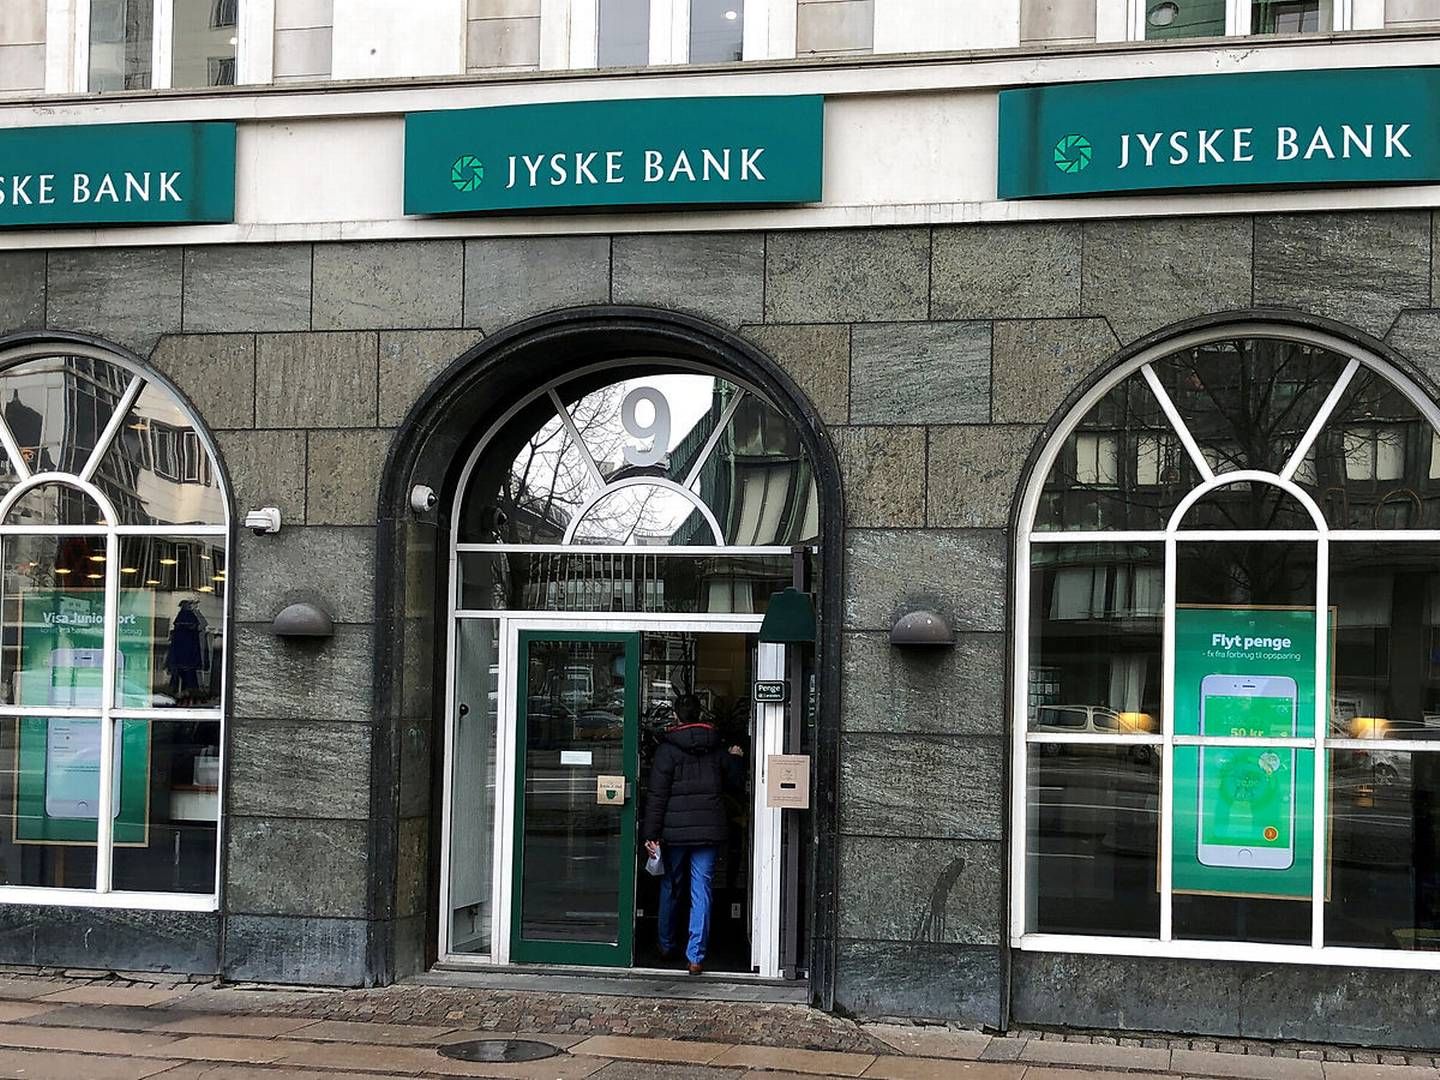 Efter købet af Handelsbankens danske aktiviteter står Jyske Bank med 123 filialer.